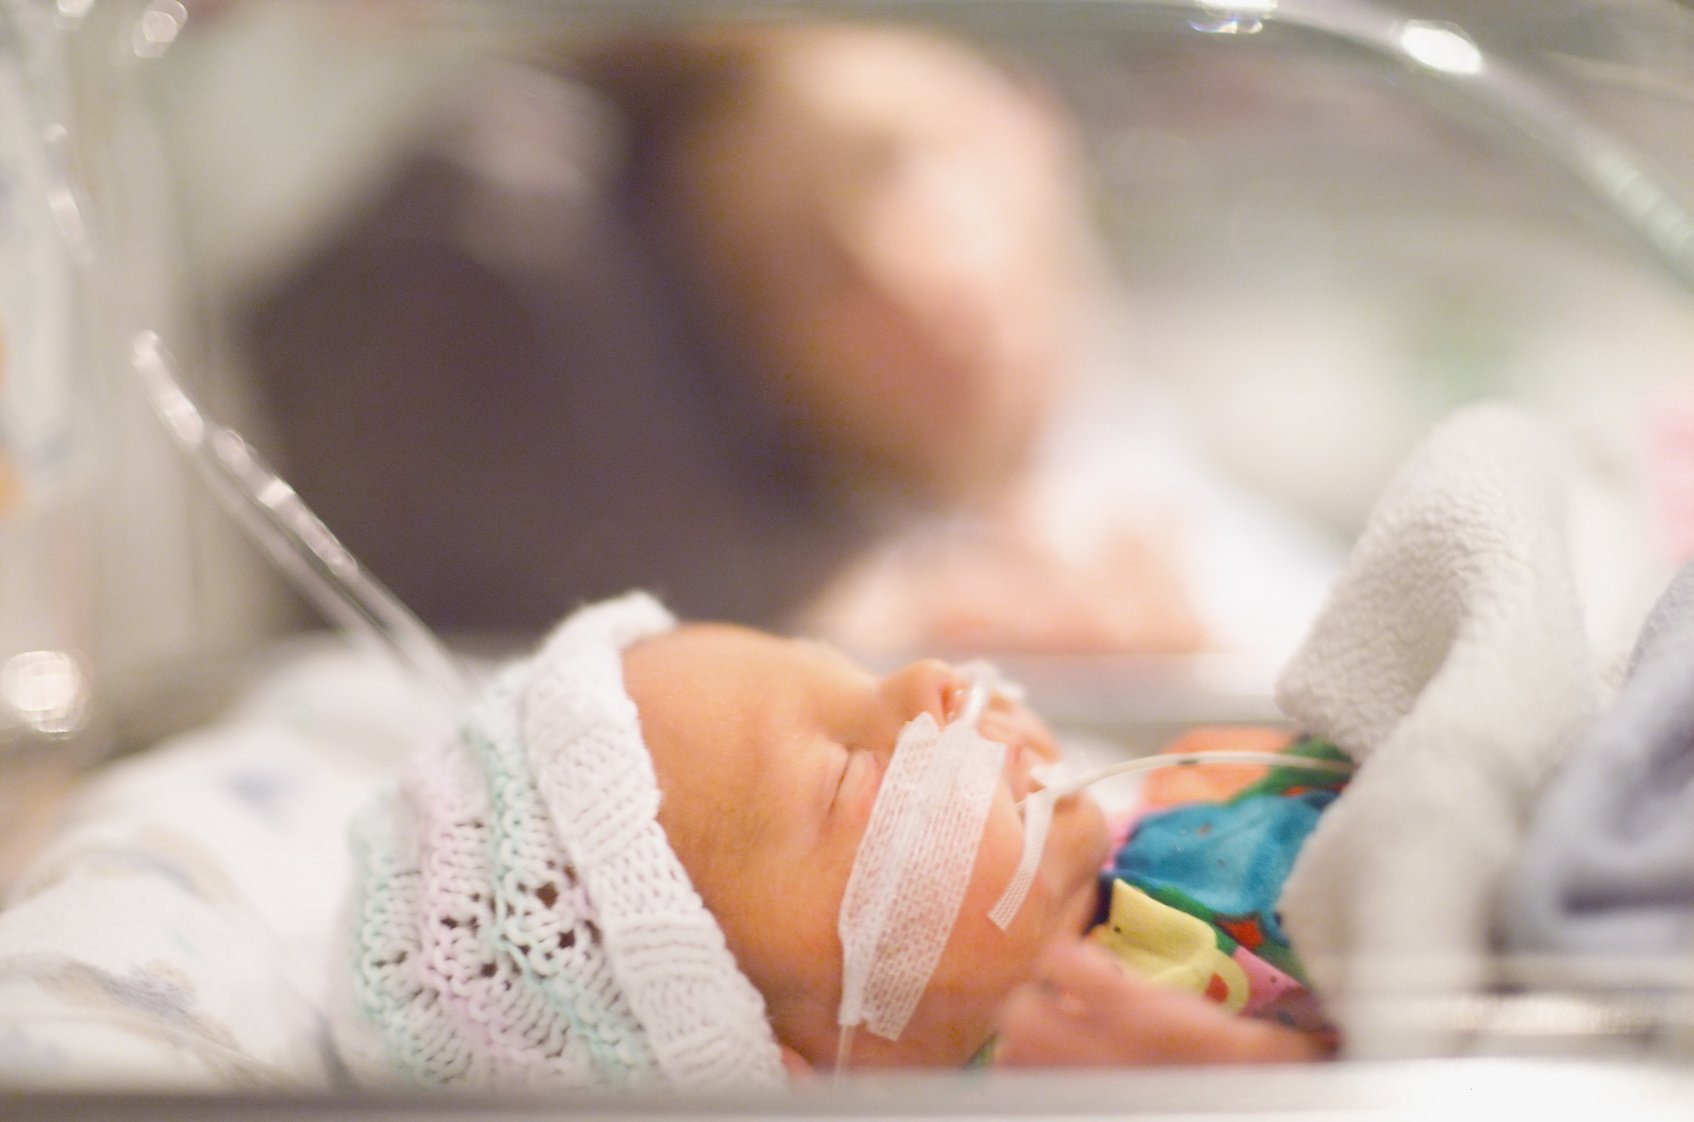 Loạn sản phổi ở trẻ sơ sinh